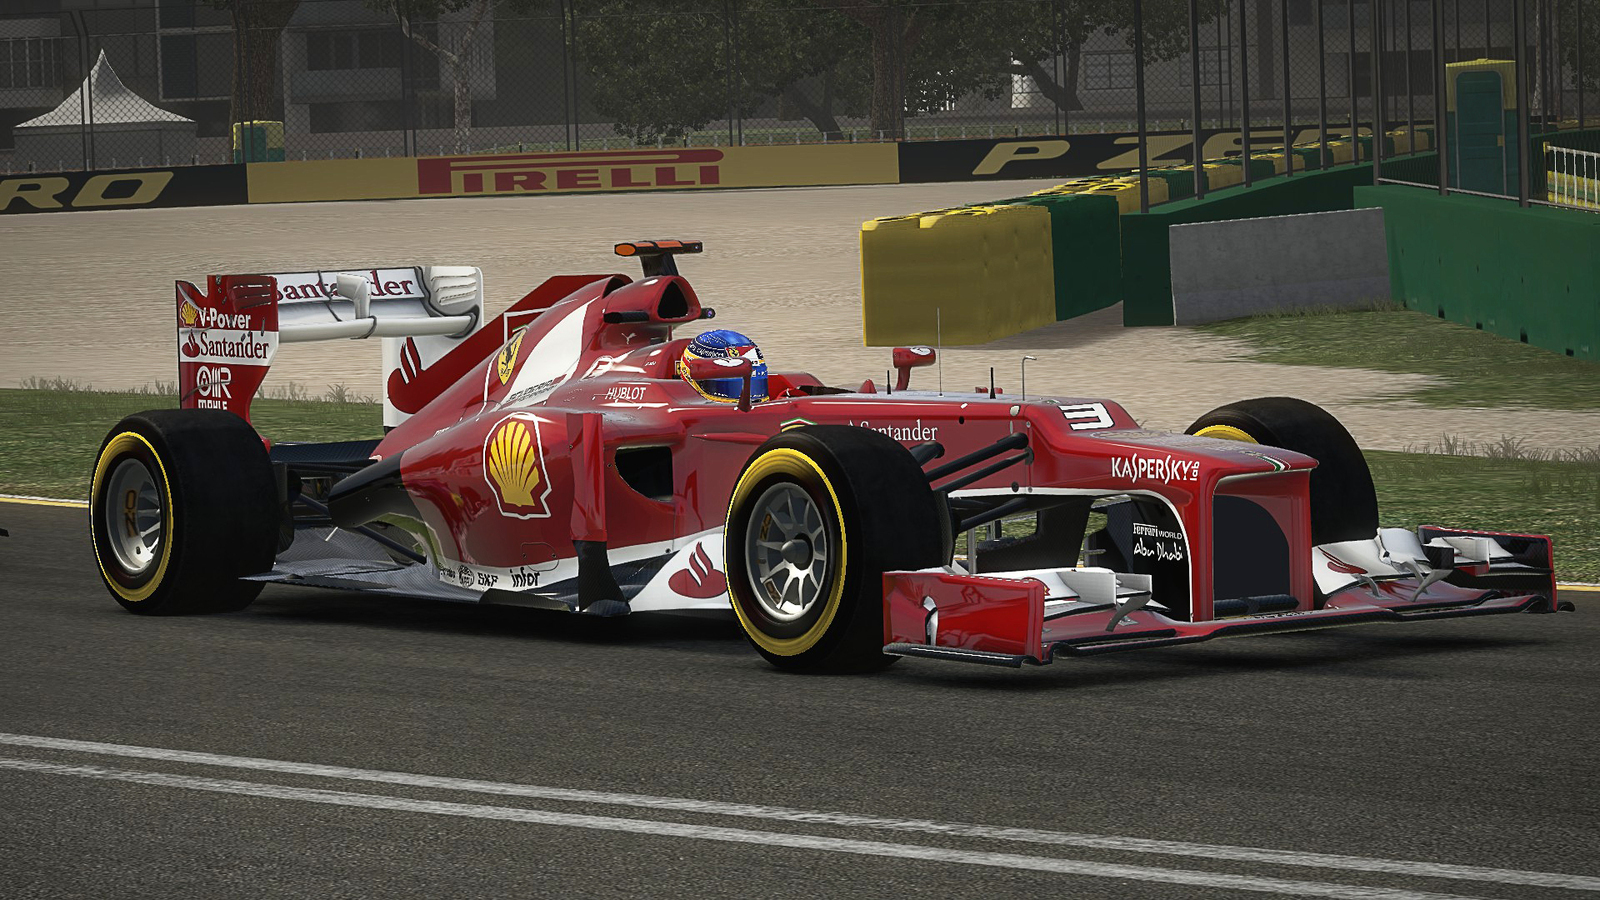 F1 2013 - дата выхода, системные требования, обзоры и новости об игре F1 2013, видео, скриншоты к игре F1 2013, база знаний по игре F1 2013 на сайте Games.mail.ru - Игры@Mail.Ru